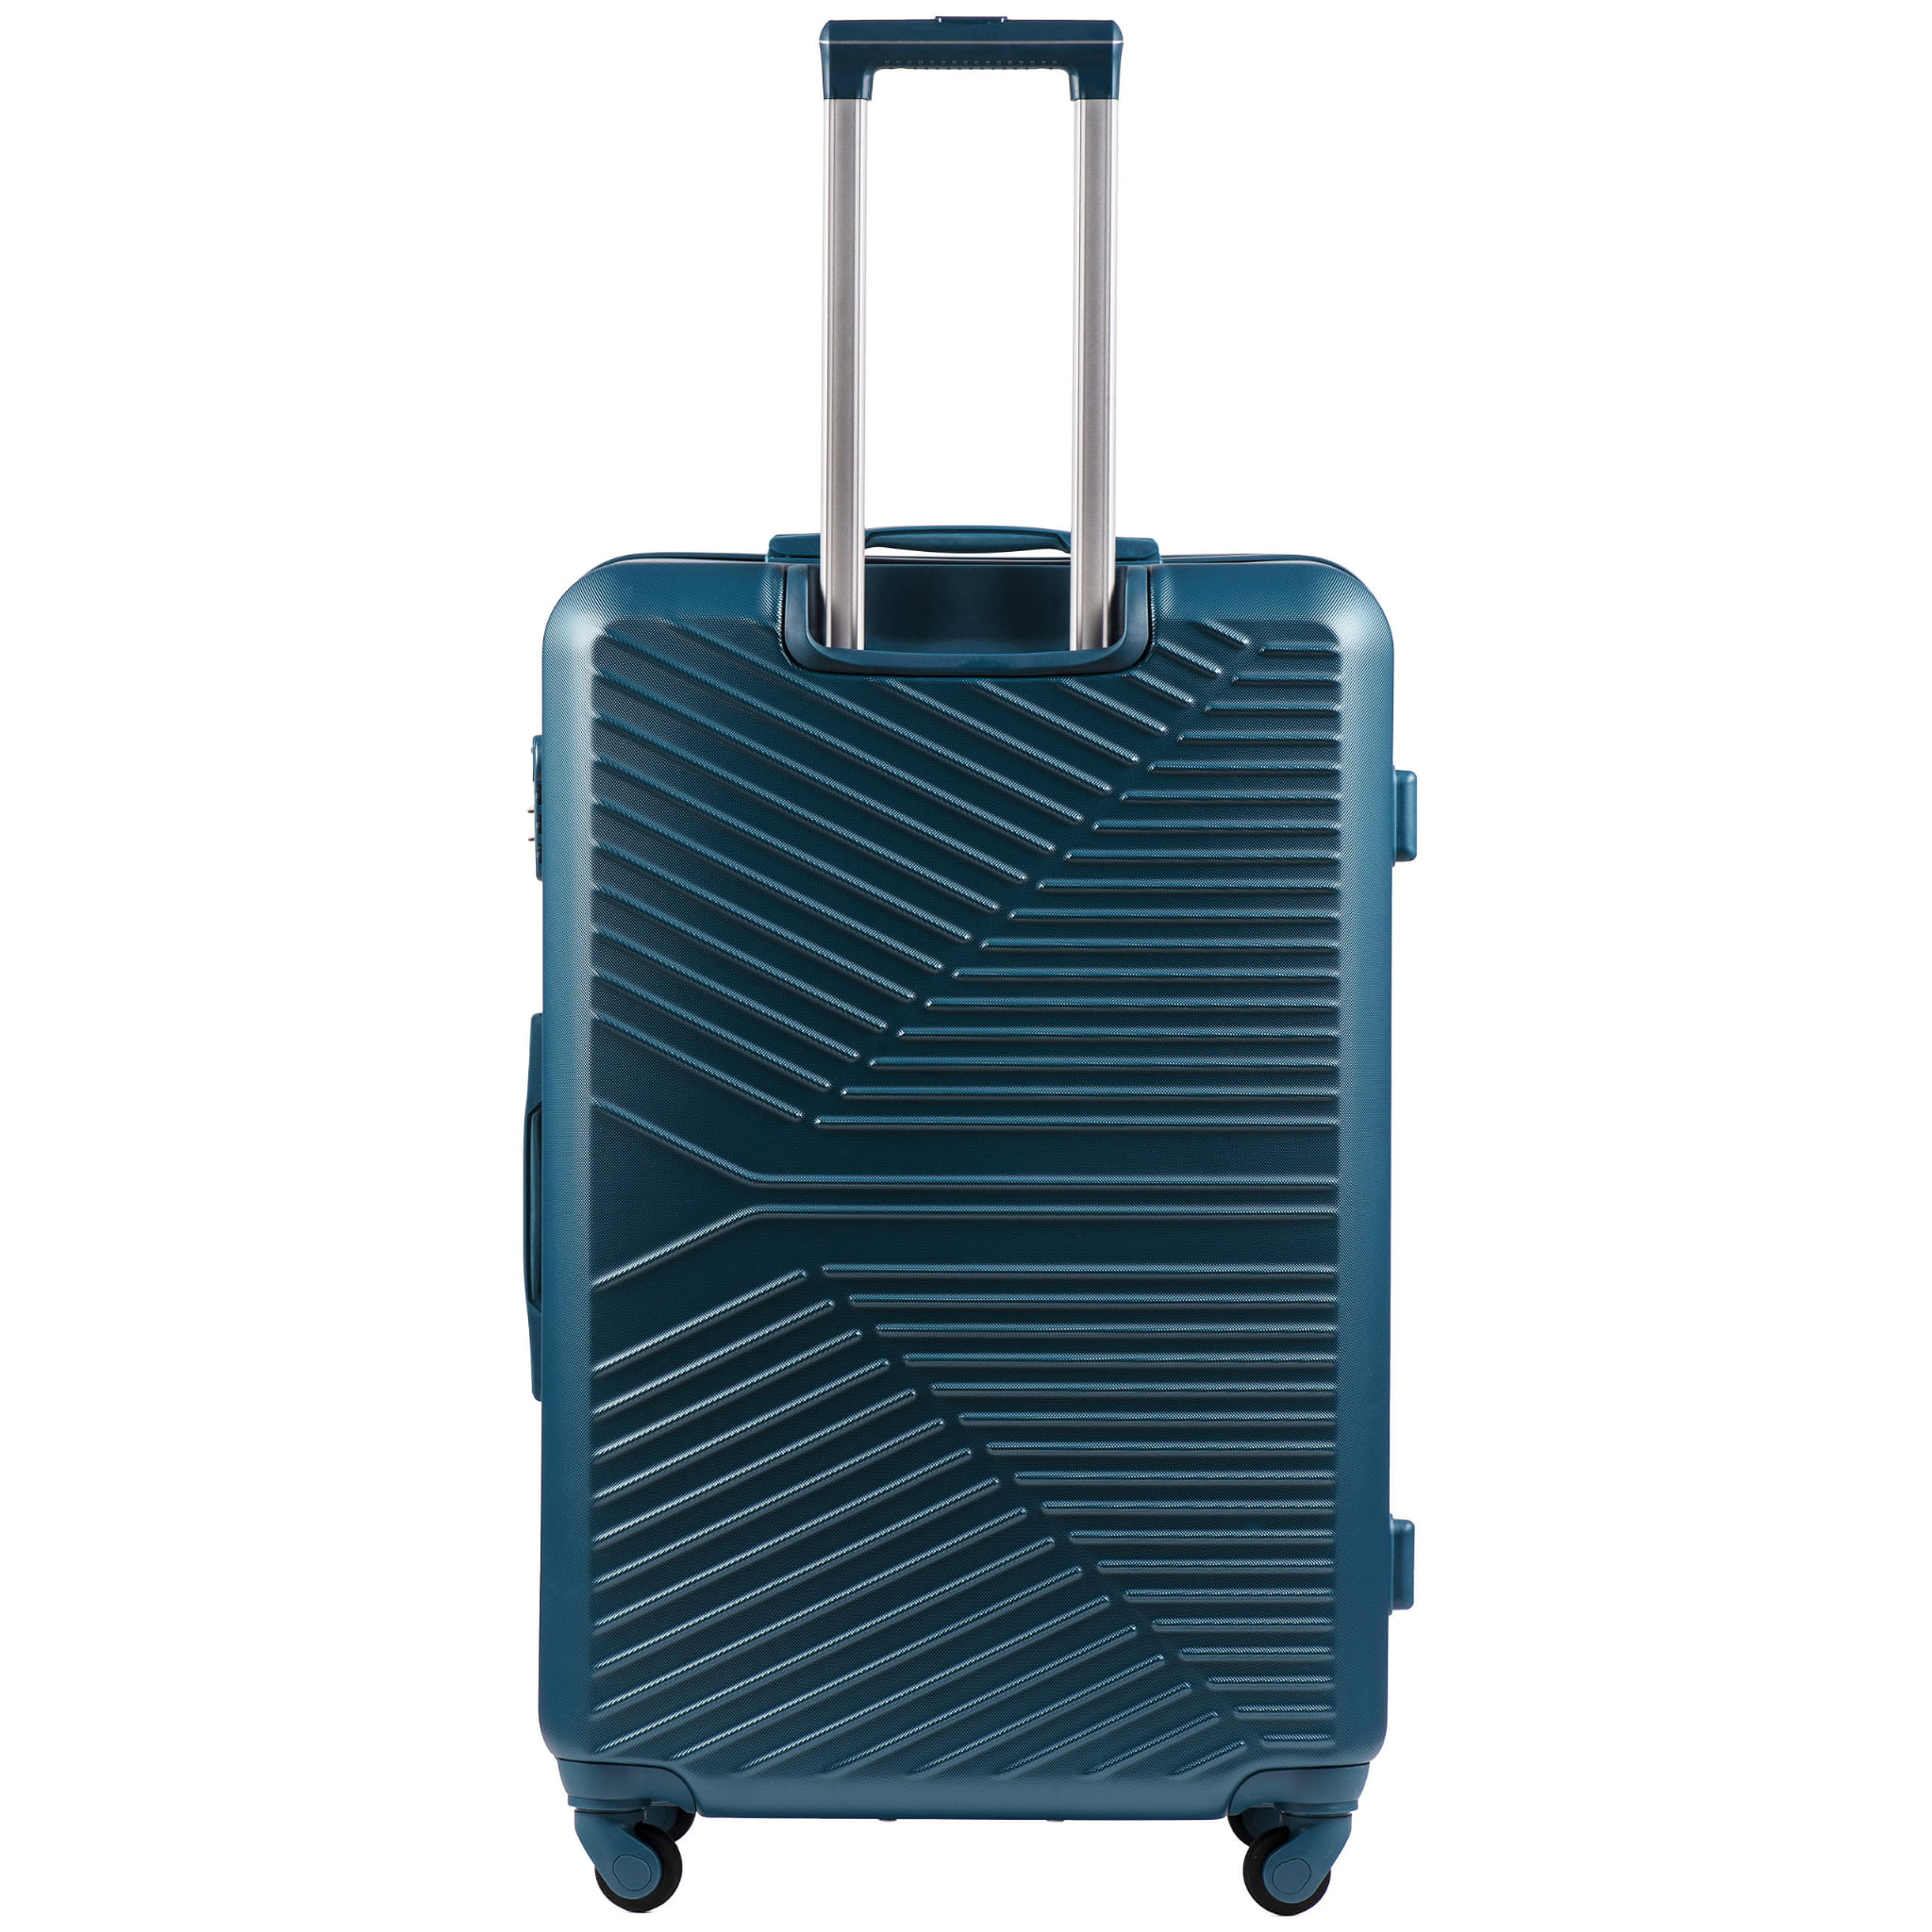 266-sinine-suur-reisikohver-l-ABS(plastik)-97l-kohvrimaailm-tagant